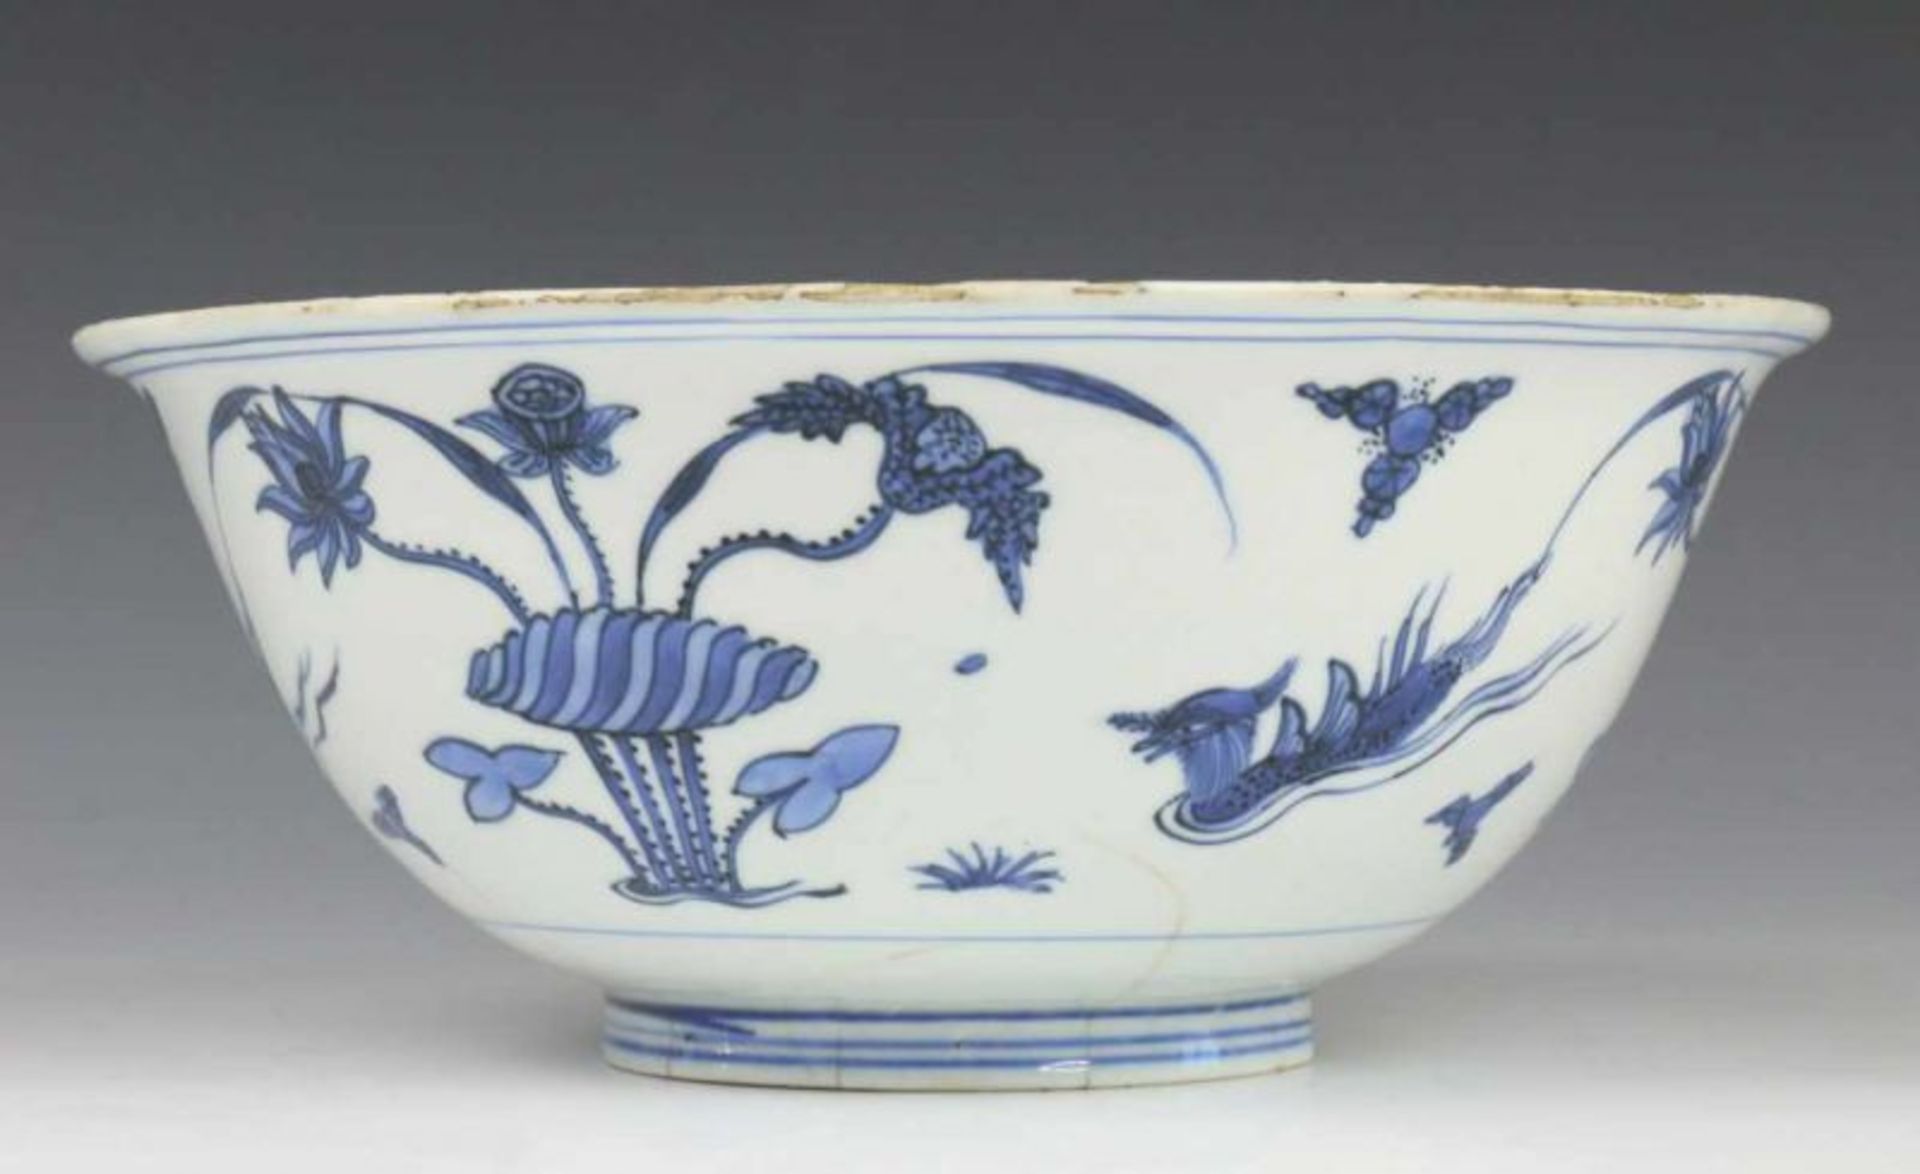 China, blauw-wit porseleinen kom, Transitional, met decor van eenden, waterplanten en lotussen - Image 3 of 5